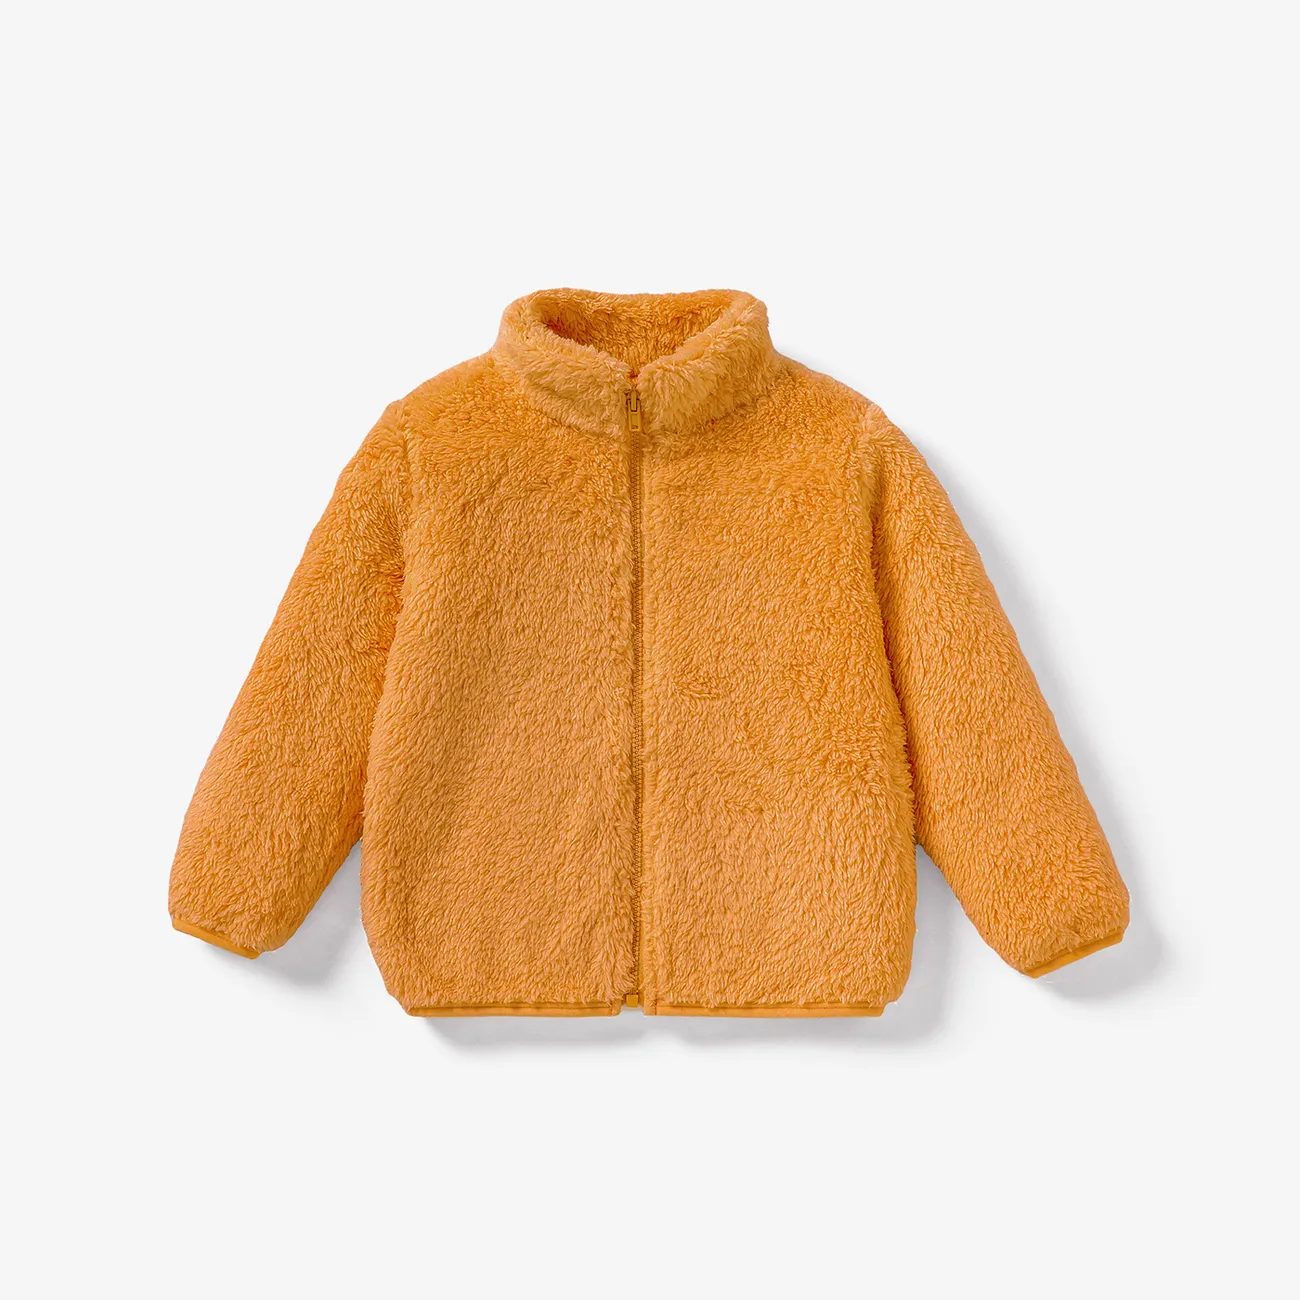 Toddler Boy/Girl Fashionable Solid Color Zipper Design Jacket/Coat Ginger big image 1